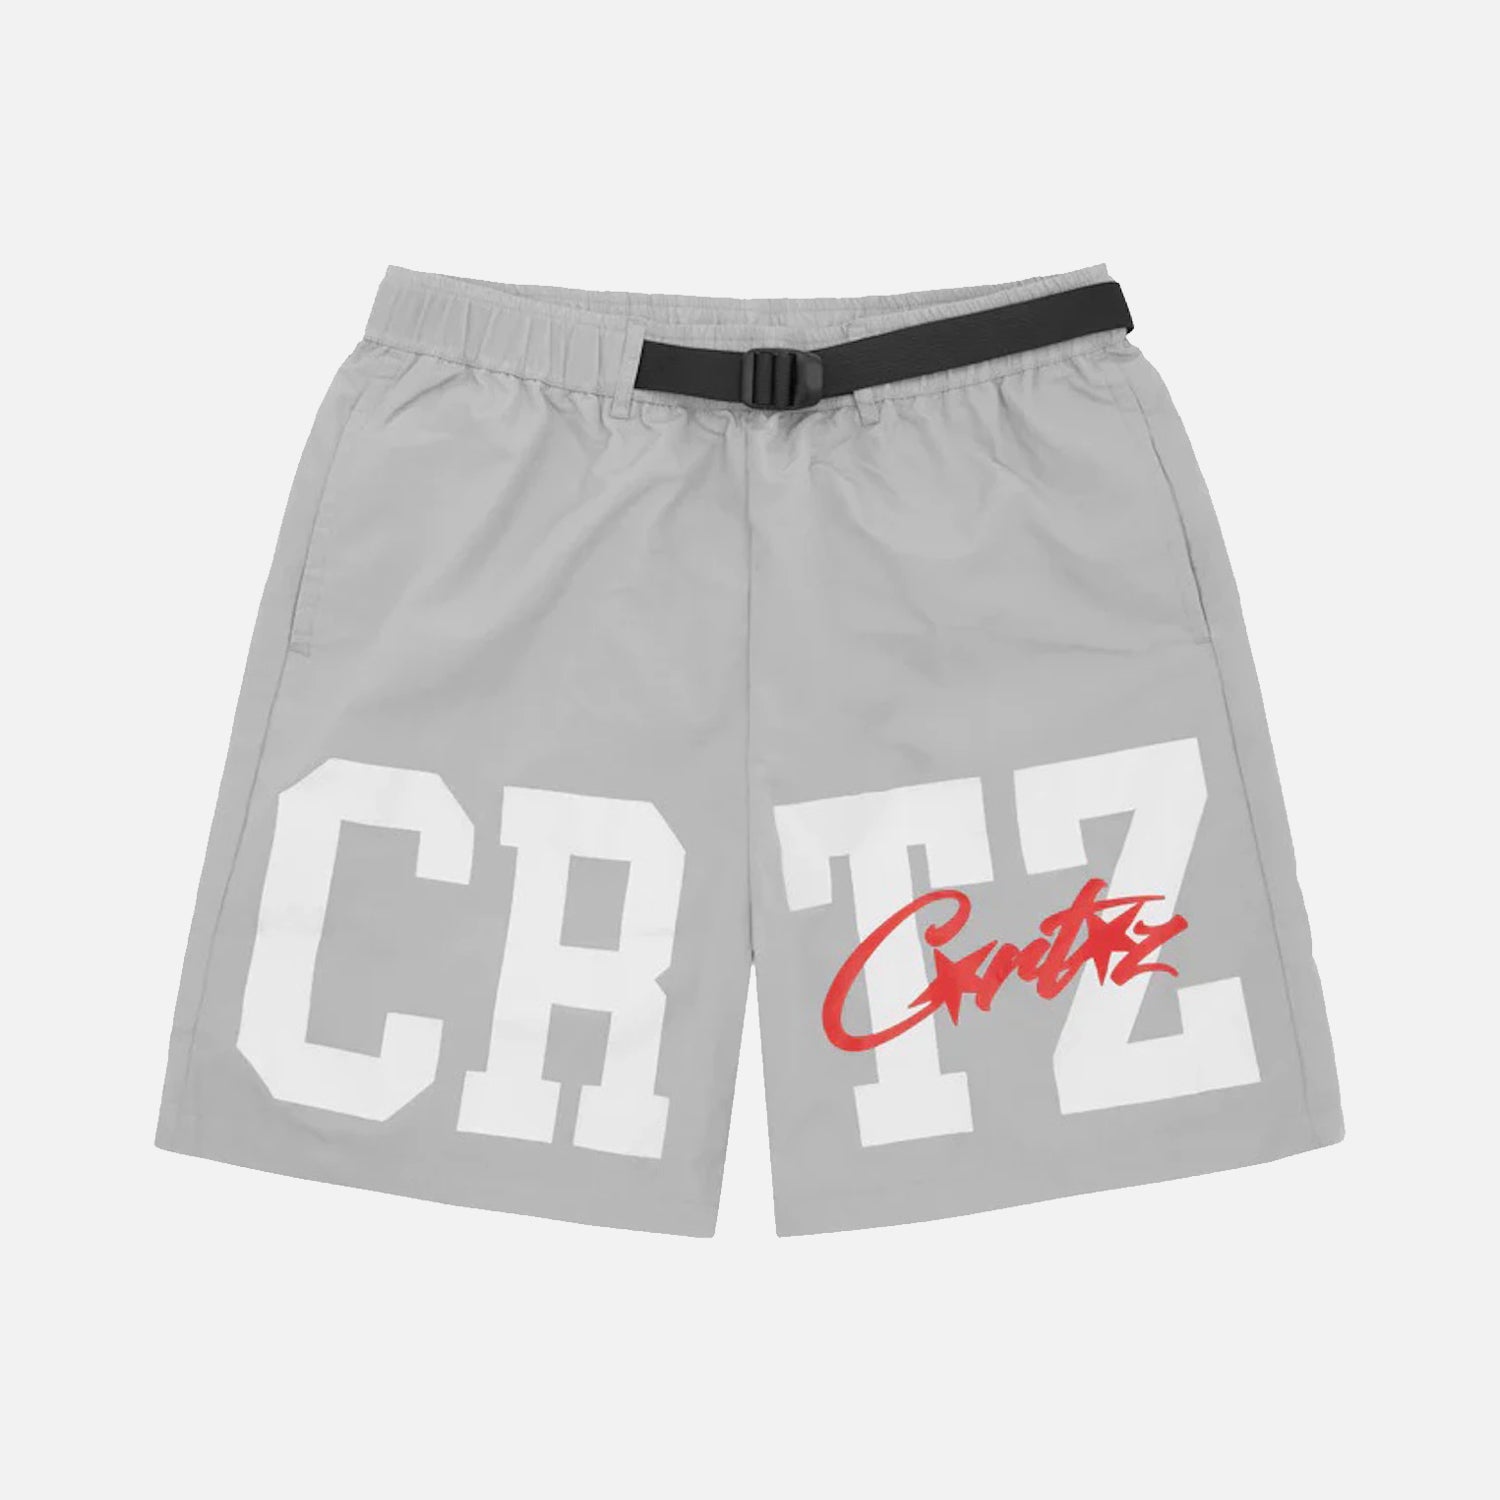 Corteiz RTW Crtz Nylon Shorts - Grey / White